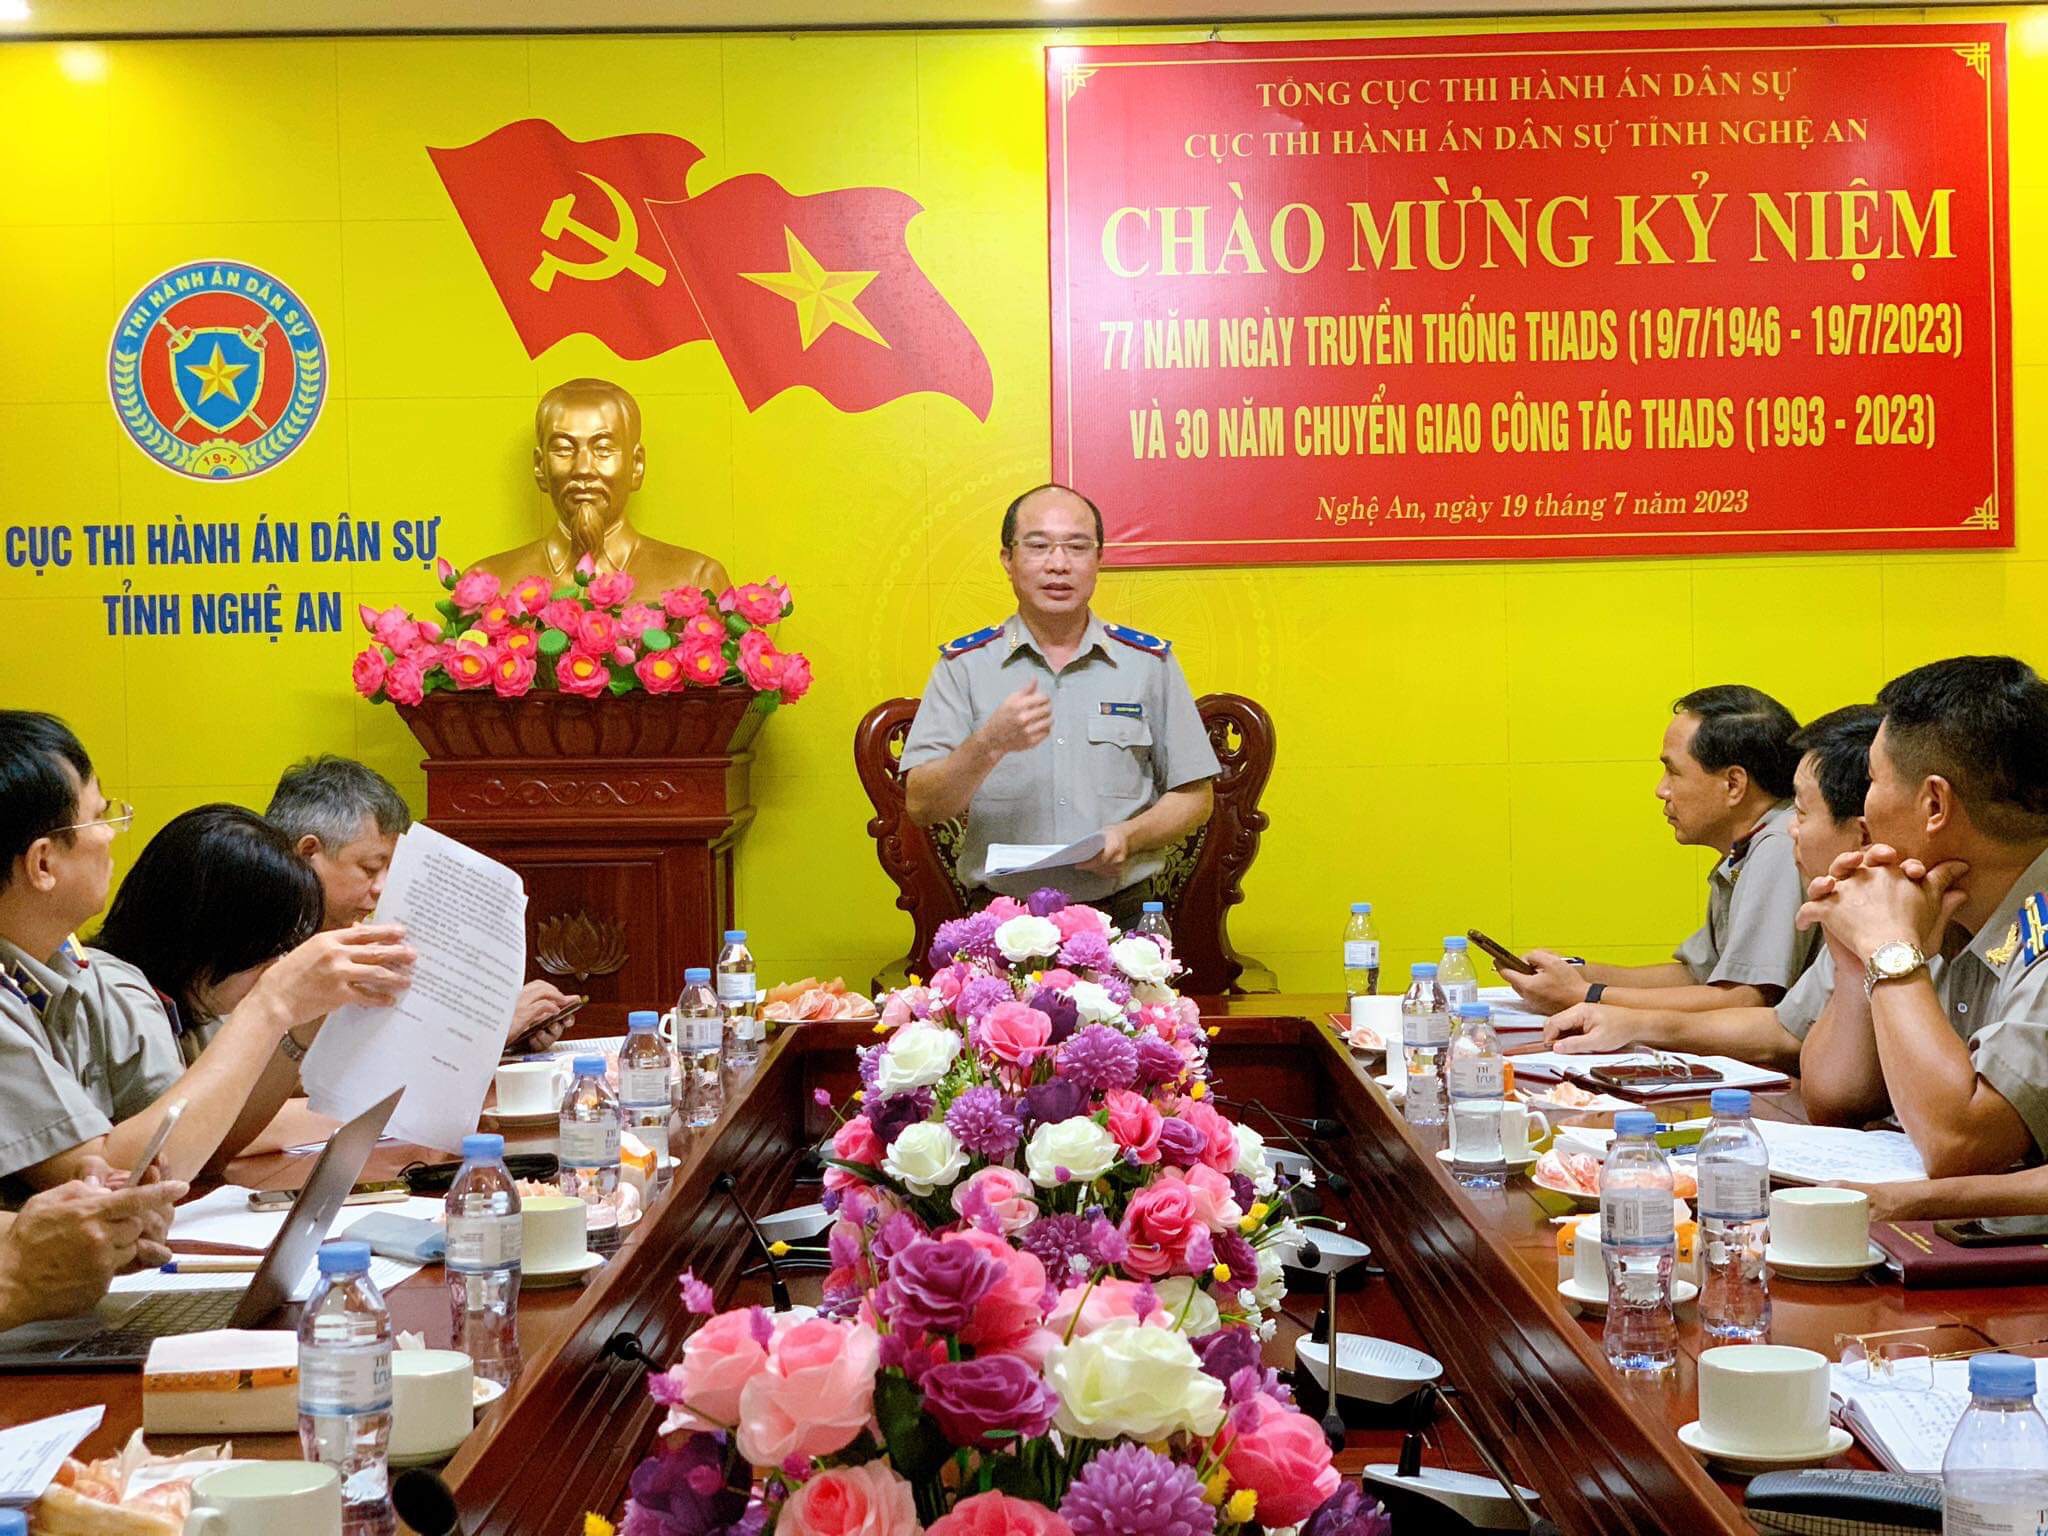 Phó Tổng cục trưởng Nguyễn Thắng Lợi làm việc với Cục Thi hành án dân sự tỉnh Nghệ An